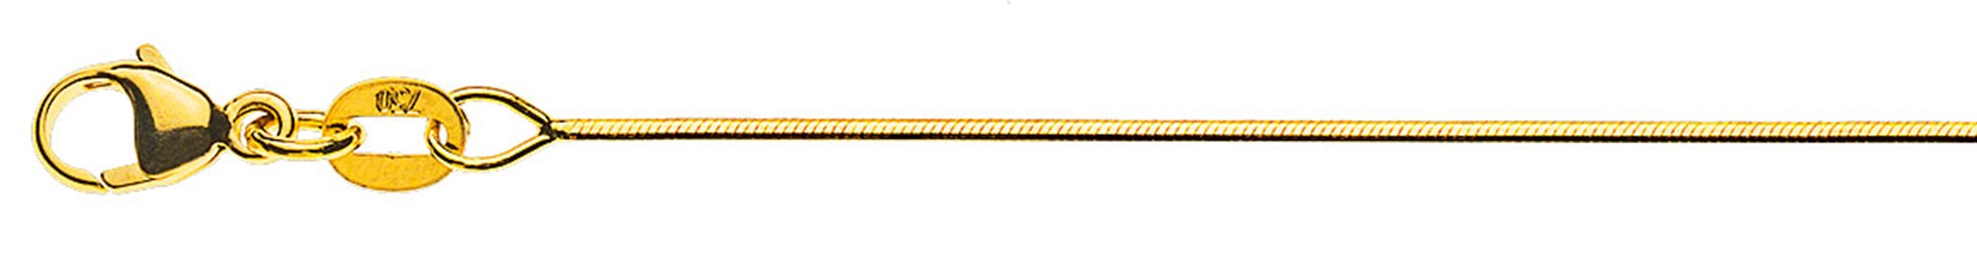 AURONOS Prestige Halskette Gelbgold 18K Schlangenkette diamantiert 45cm 0.8mm